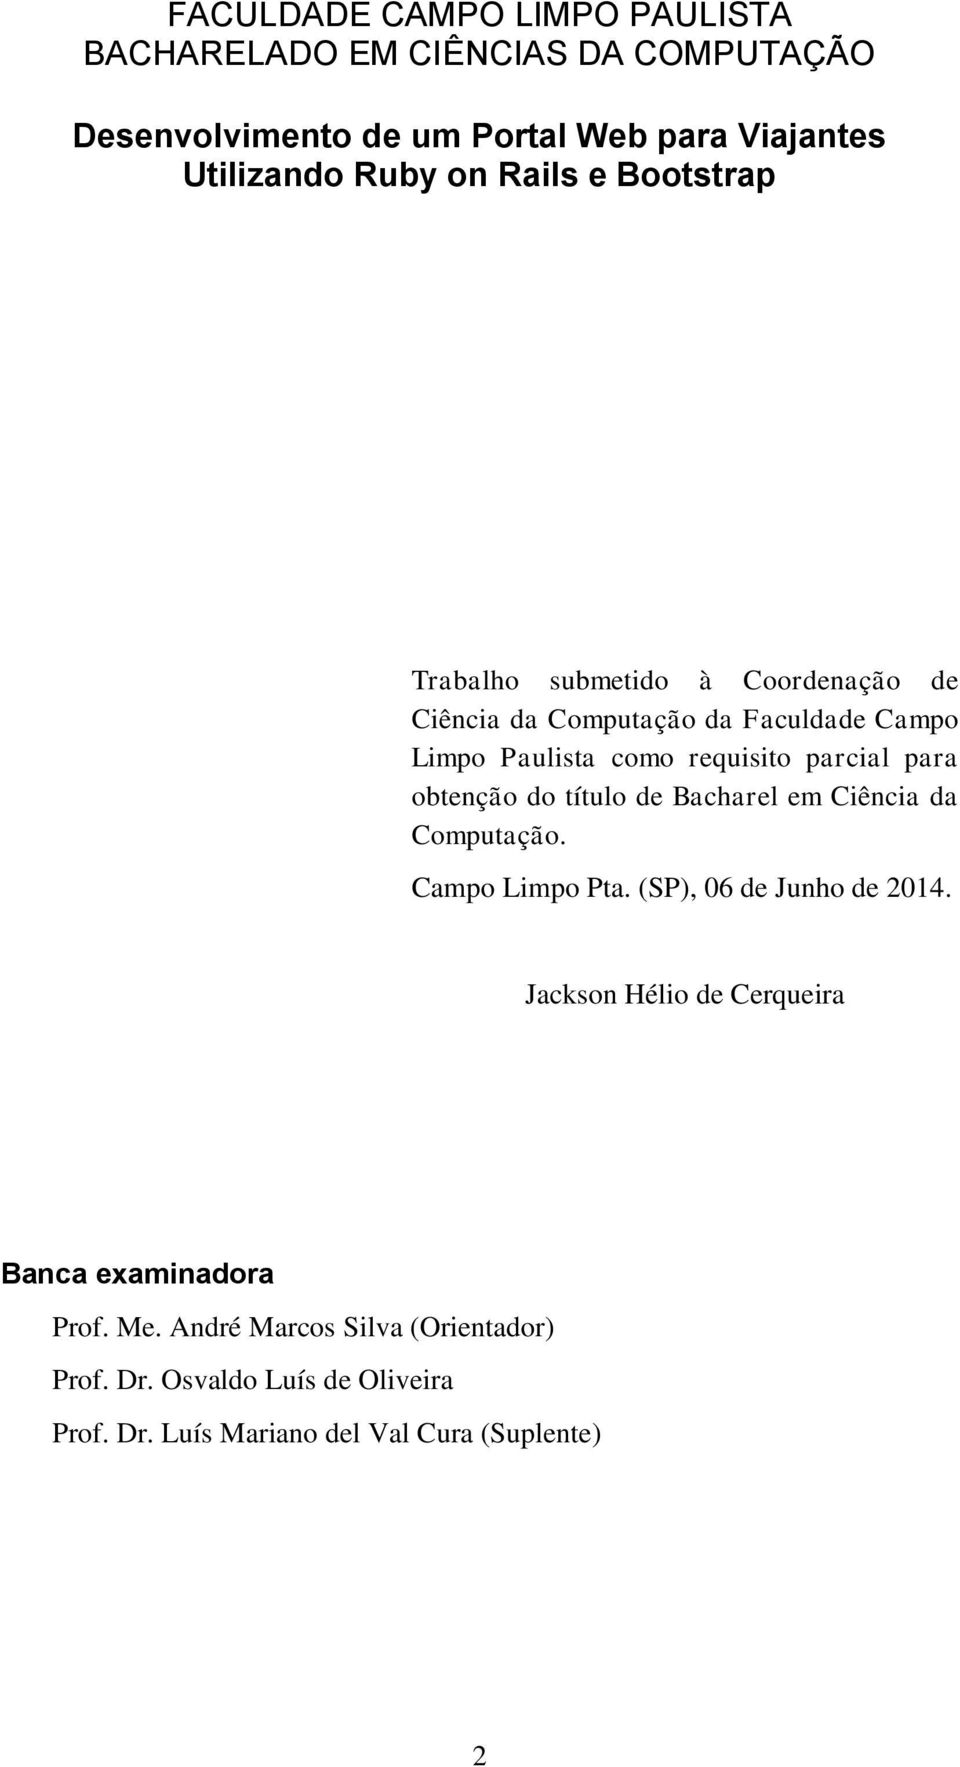 para obtenção do título de Bacharel em Ciência da Computação. Campo Limpo Pta. (SP), 06 de Junho de 2014.